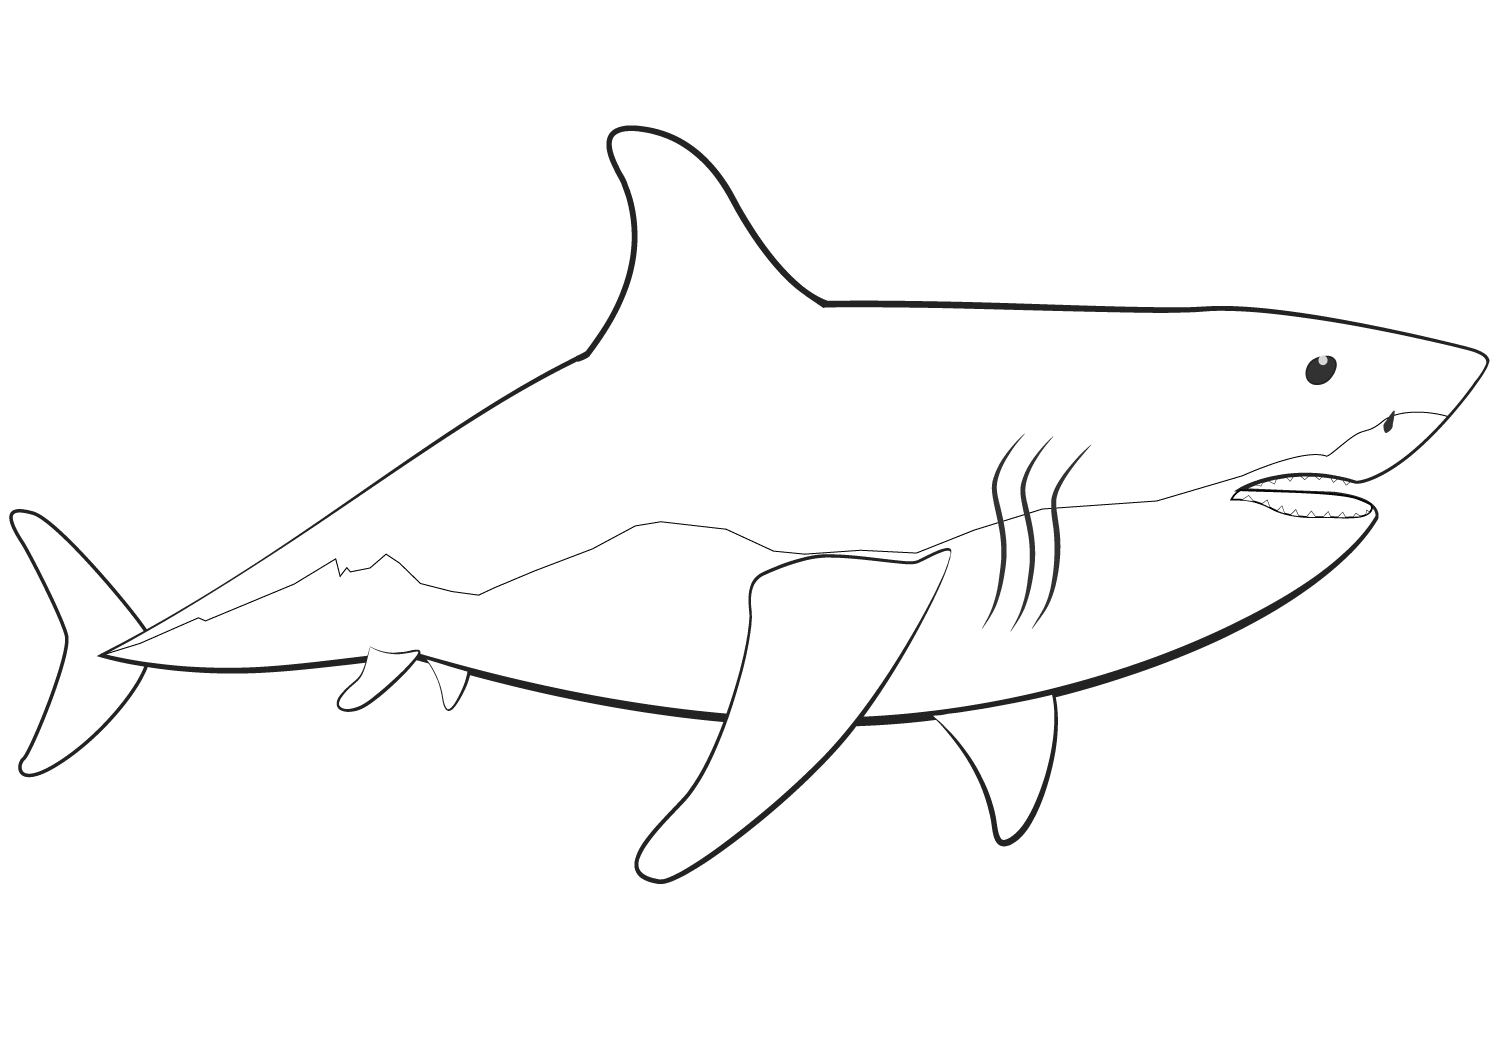 Der Körper des Weißen Hais ähnelt einem stumpfen Torpedo von Shark